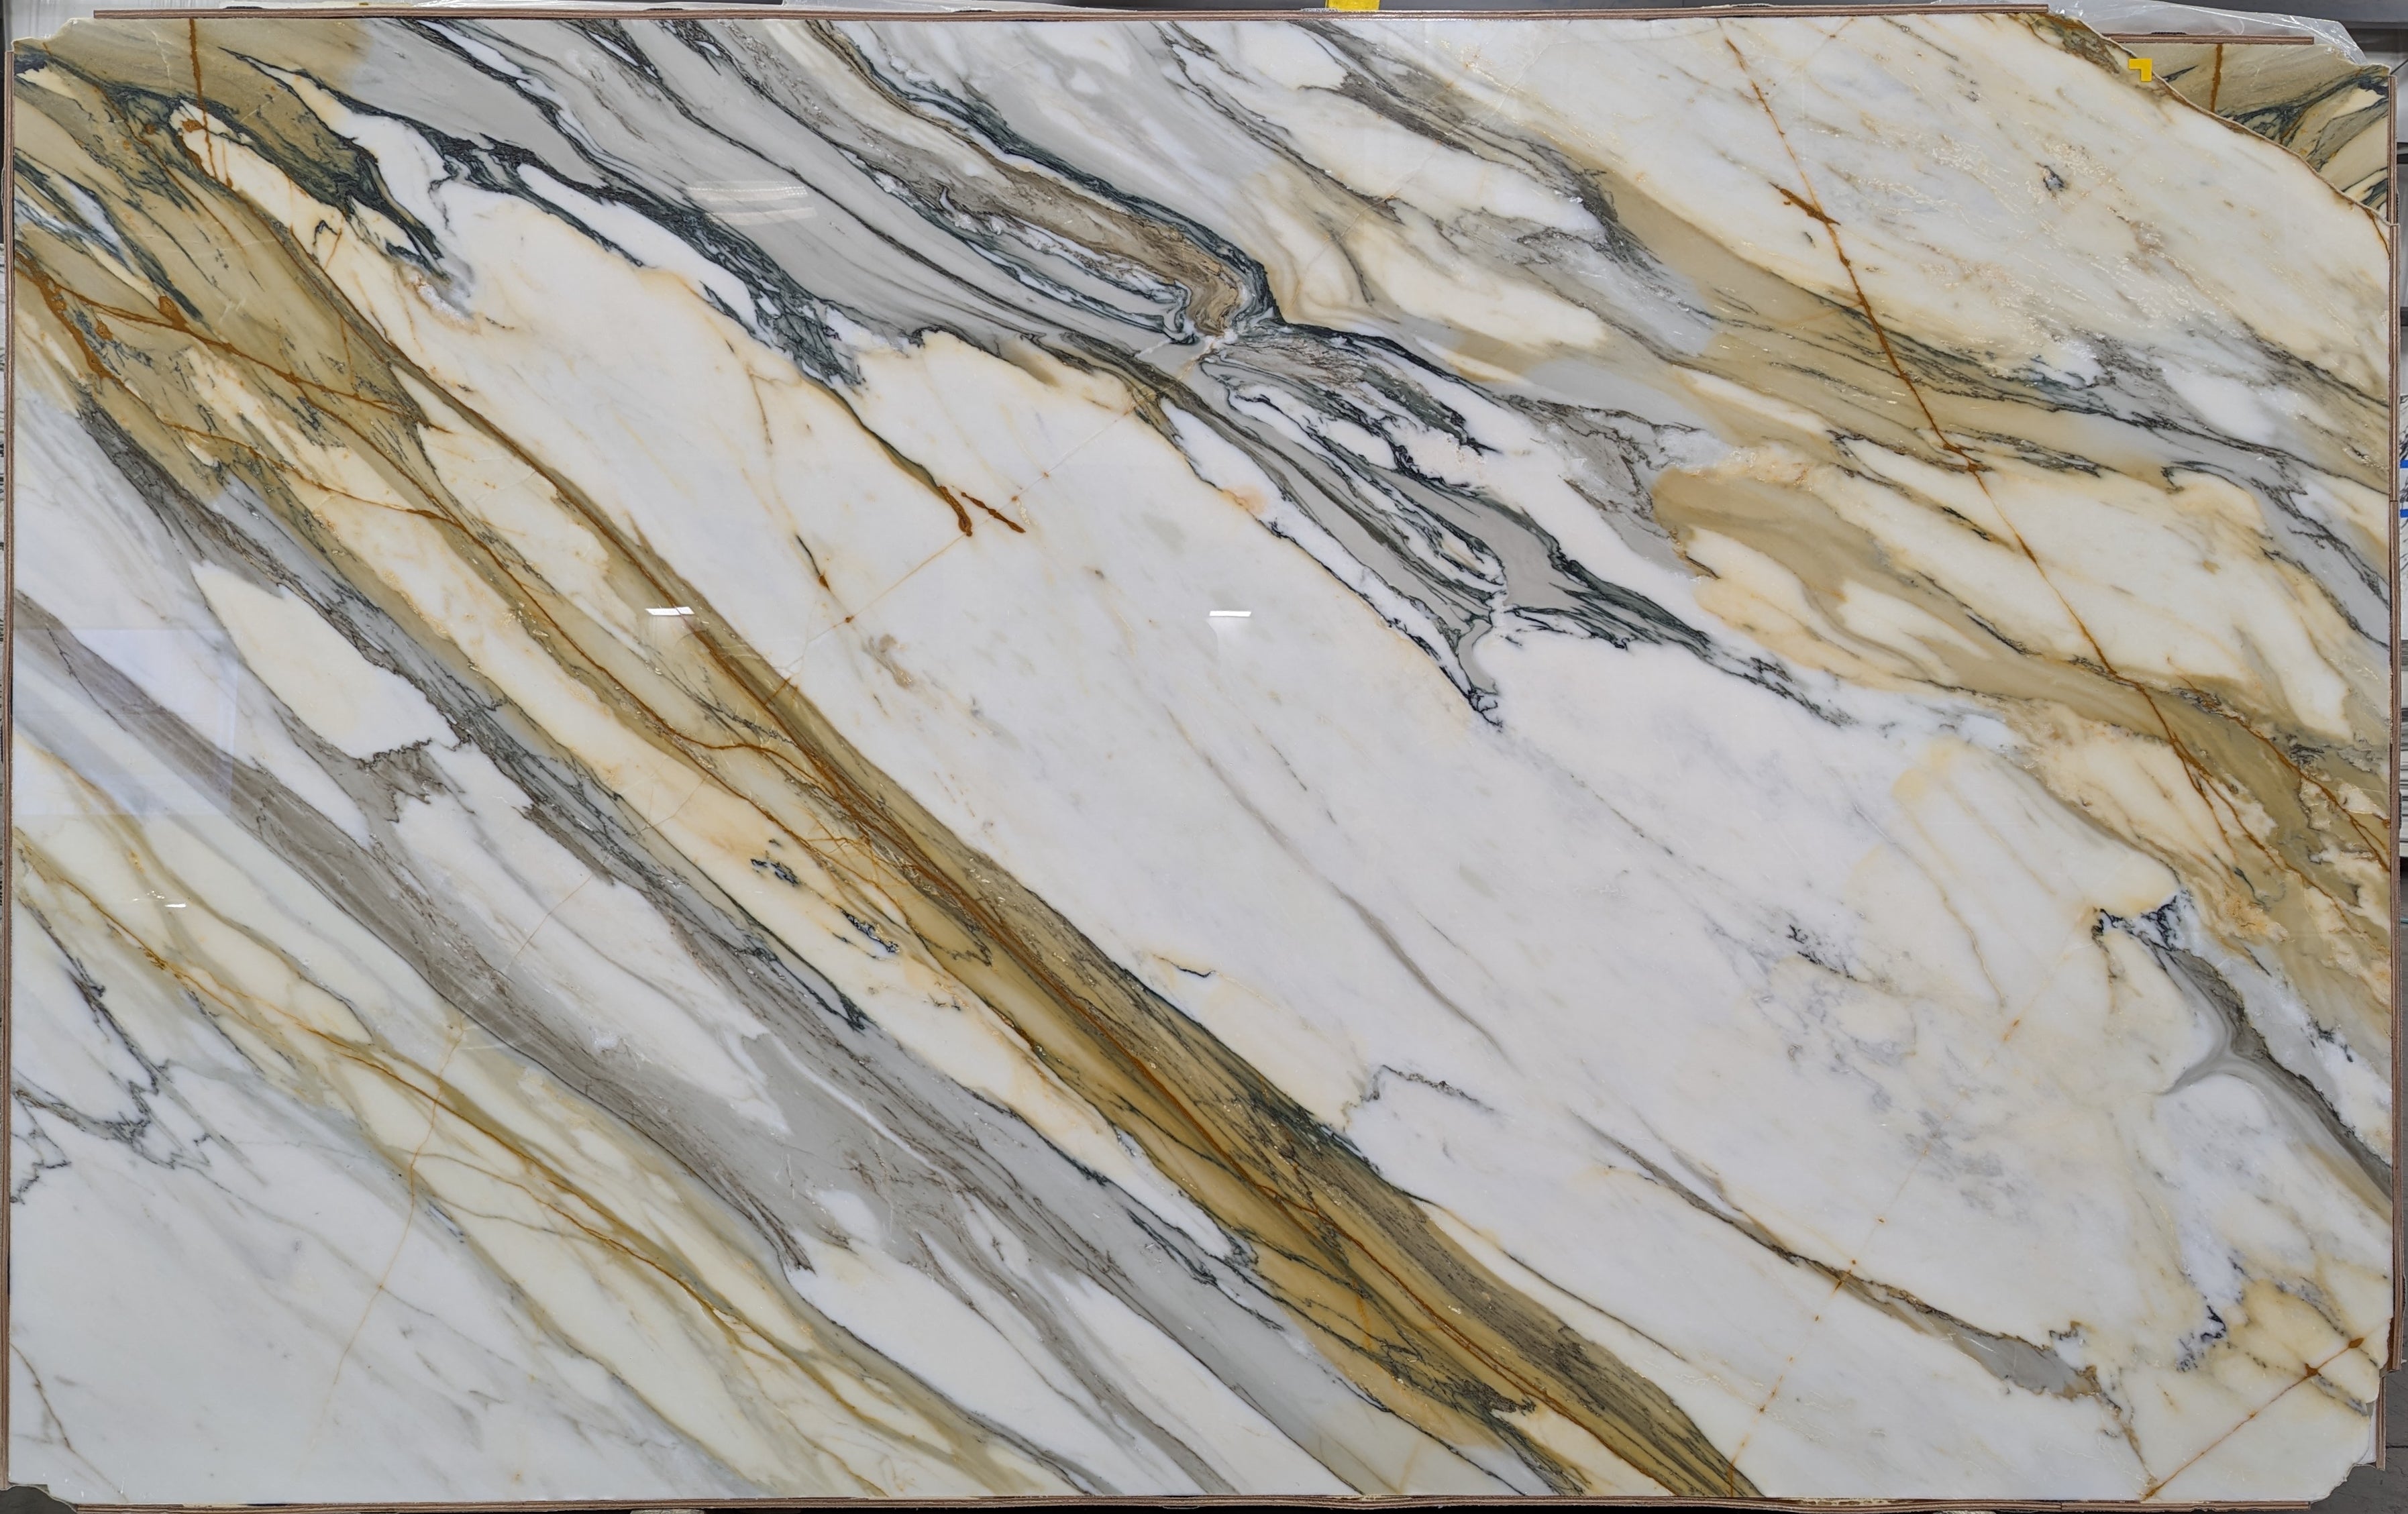  Calacatta Macchia Vecchia Marble Slab 3/4 - 26095#49 -  70x103 